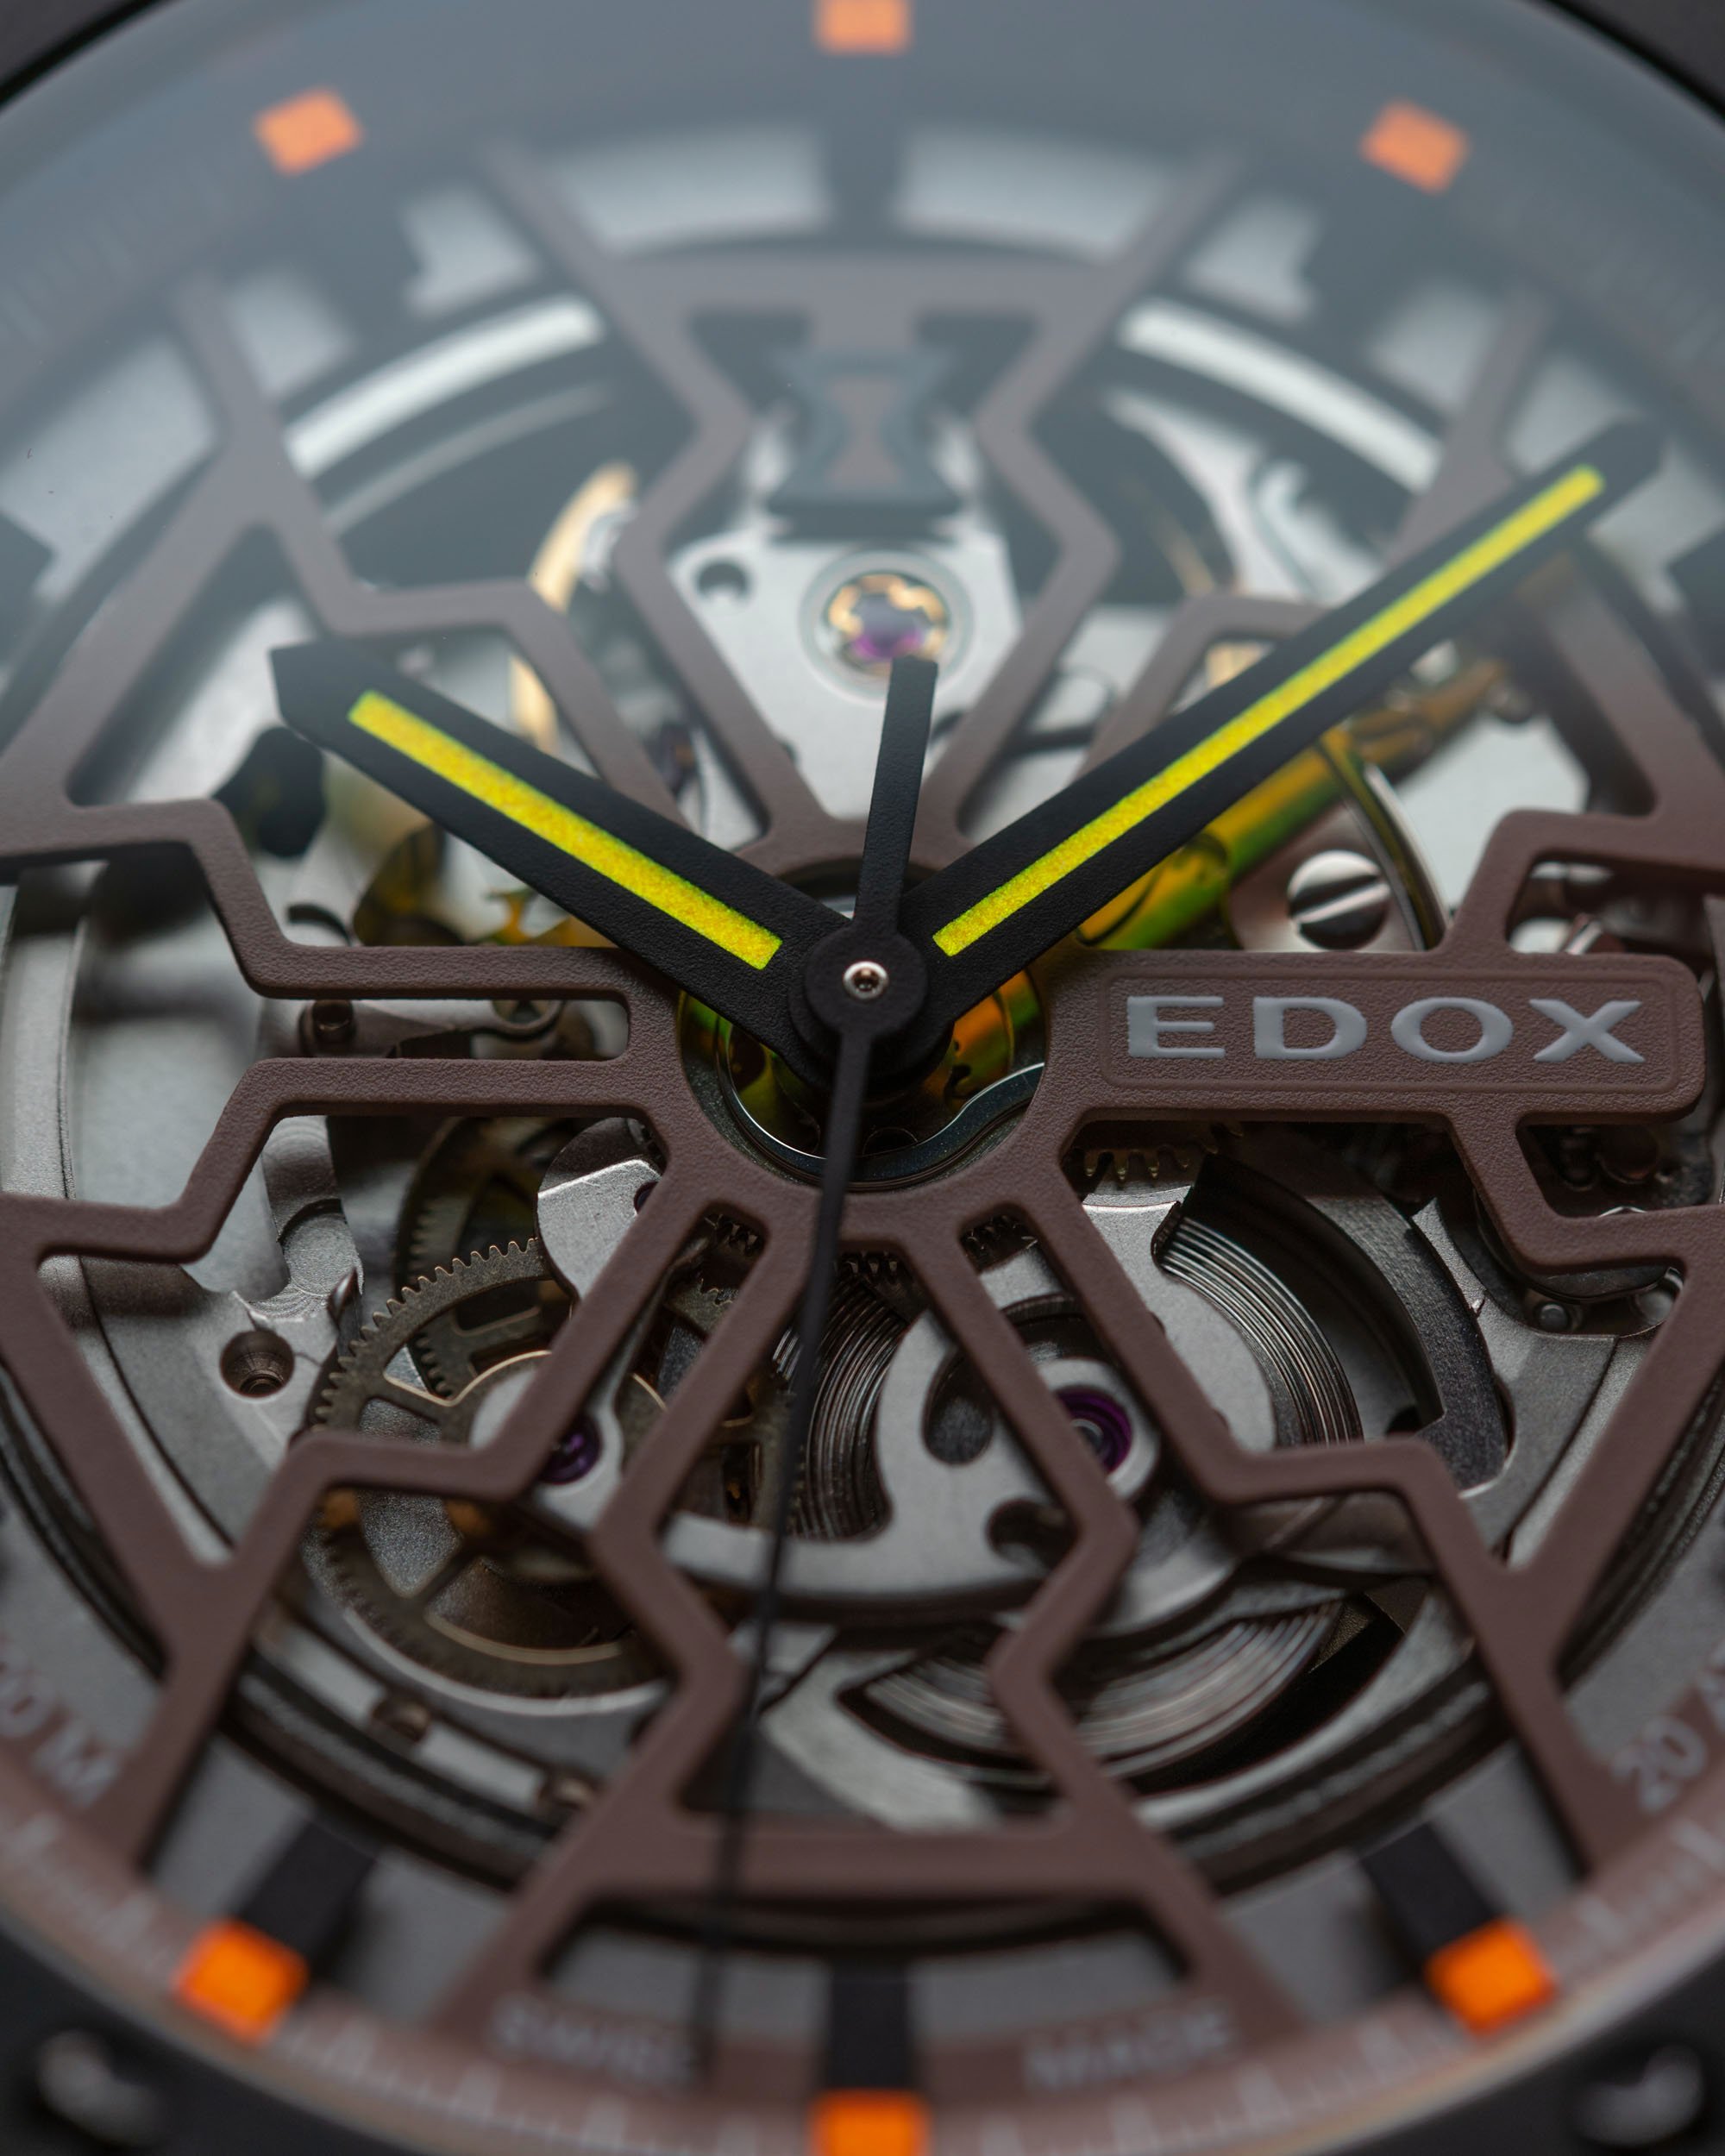 Edox Delfin Mecano: созданы для того, чтобы быть теми часами, которые вам нужны с 1961 года